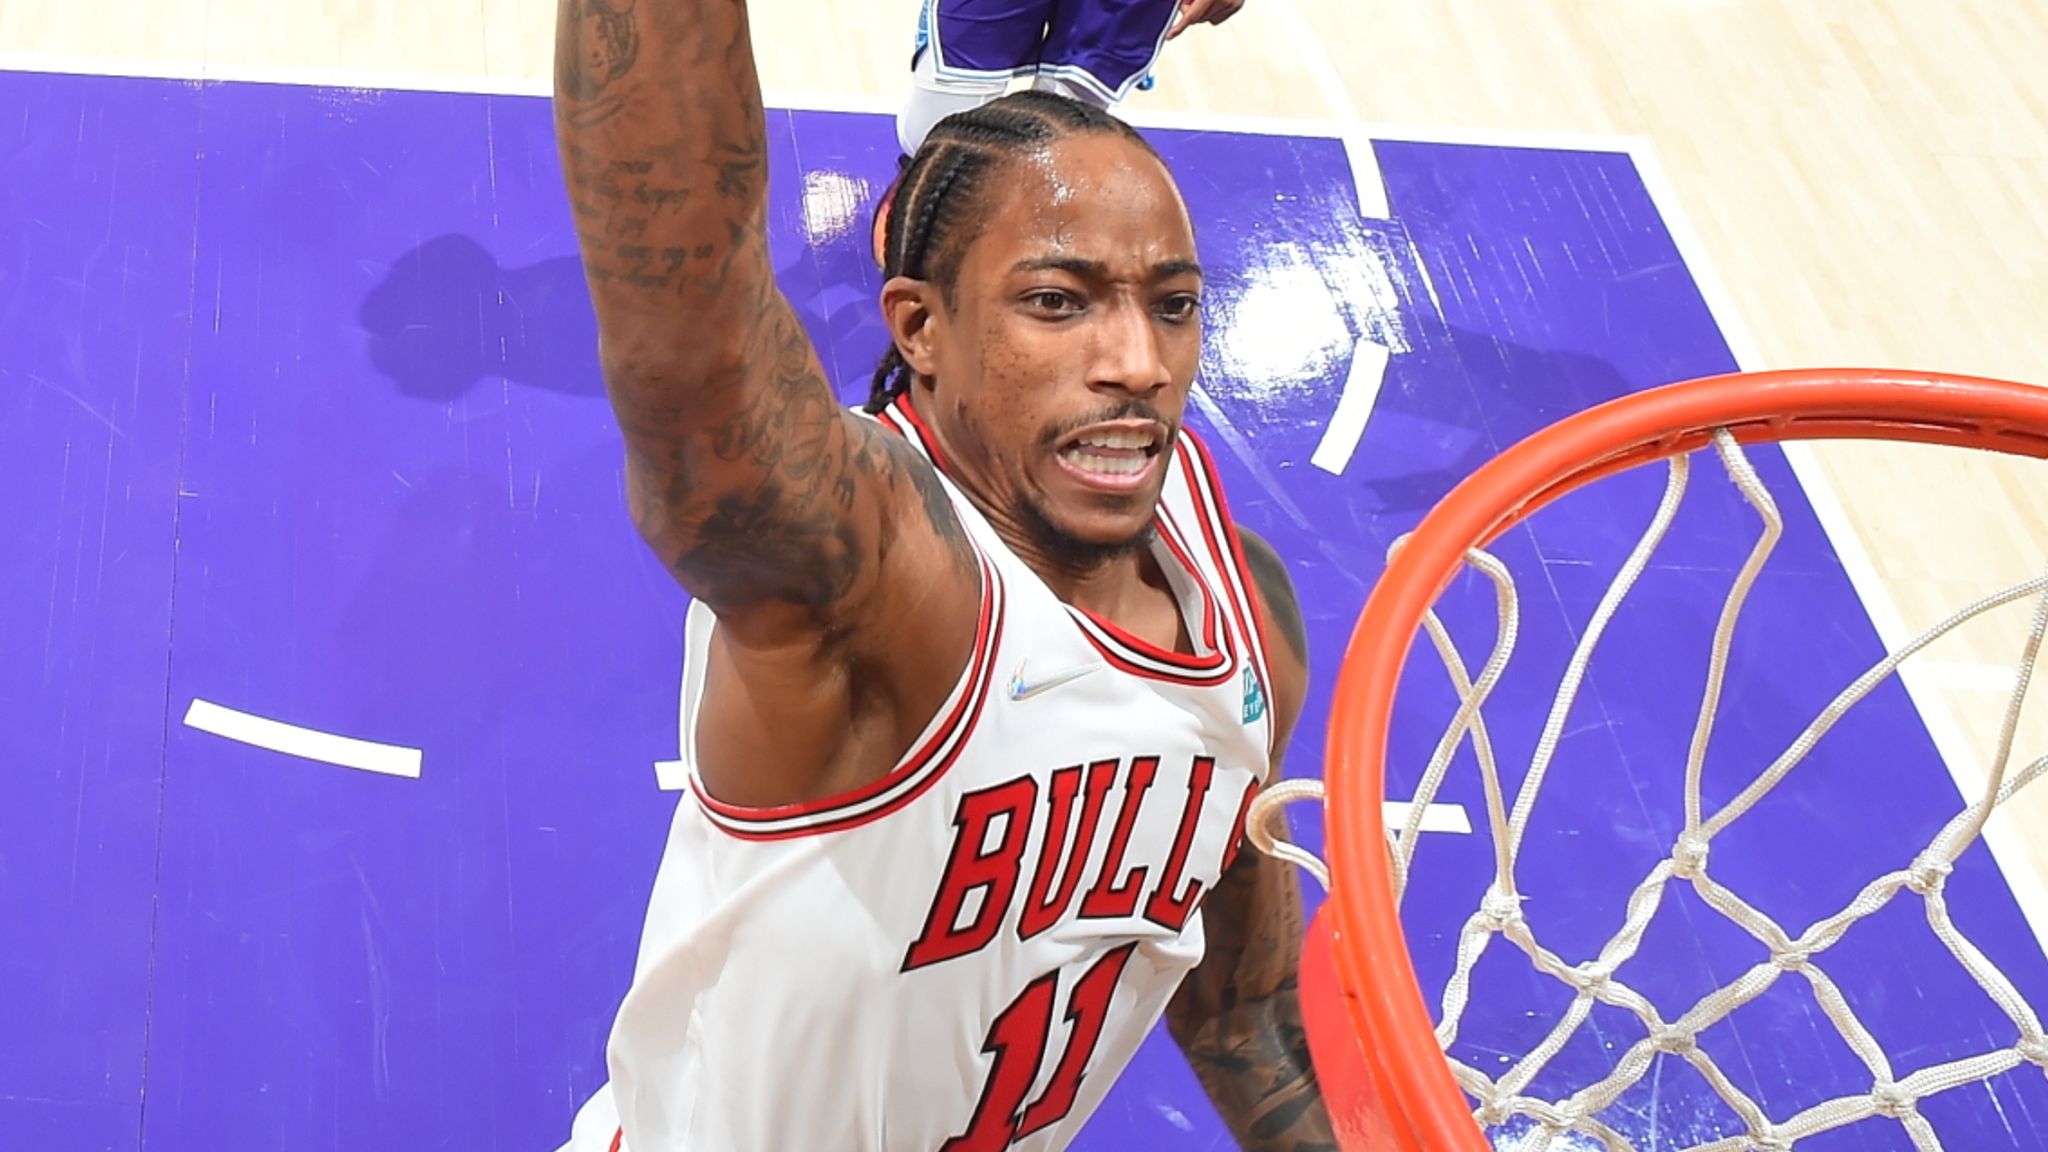 Bulls News: Clippers' Guard Sounds Off on DeMar DeRozan